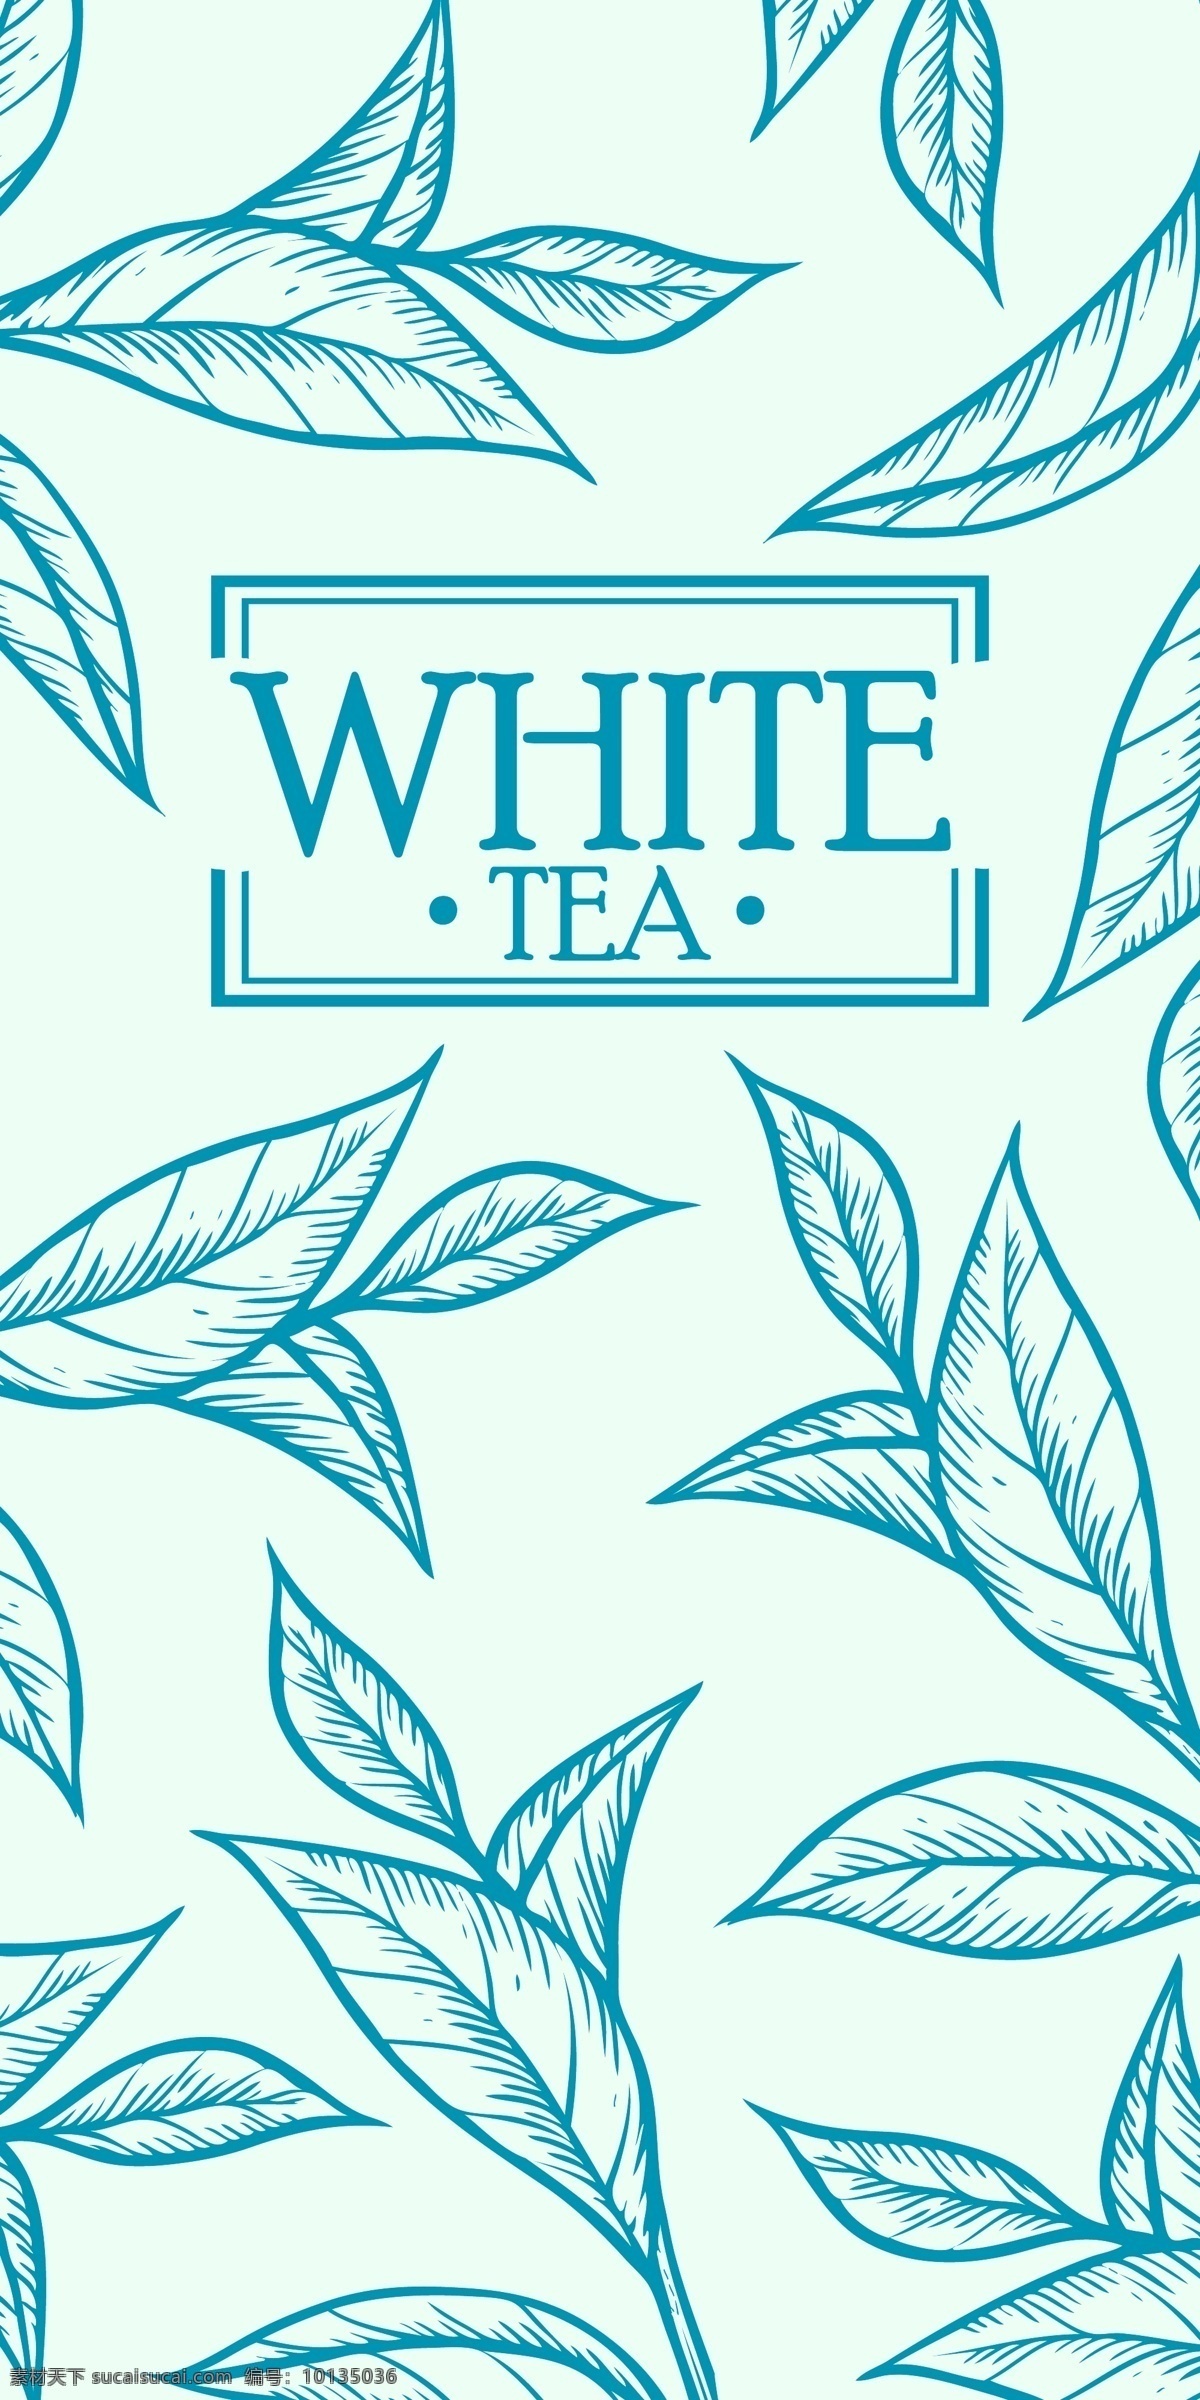 茶叶封面 手绘茶叶 杯子 茶叶广告 茶叶 单芽 嫩芽 叶子 春芽 茶素材 绿叶 茶包装 包装设计 春茶